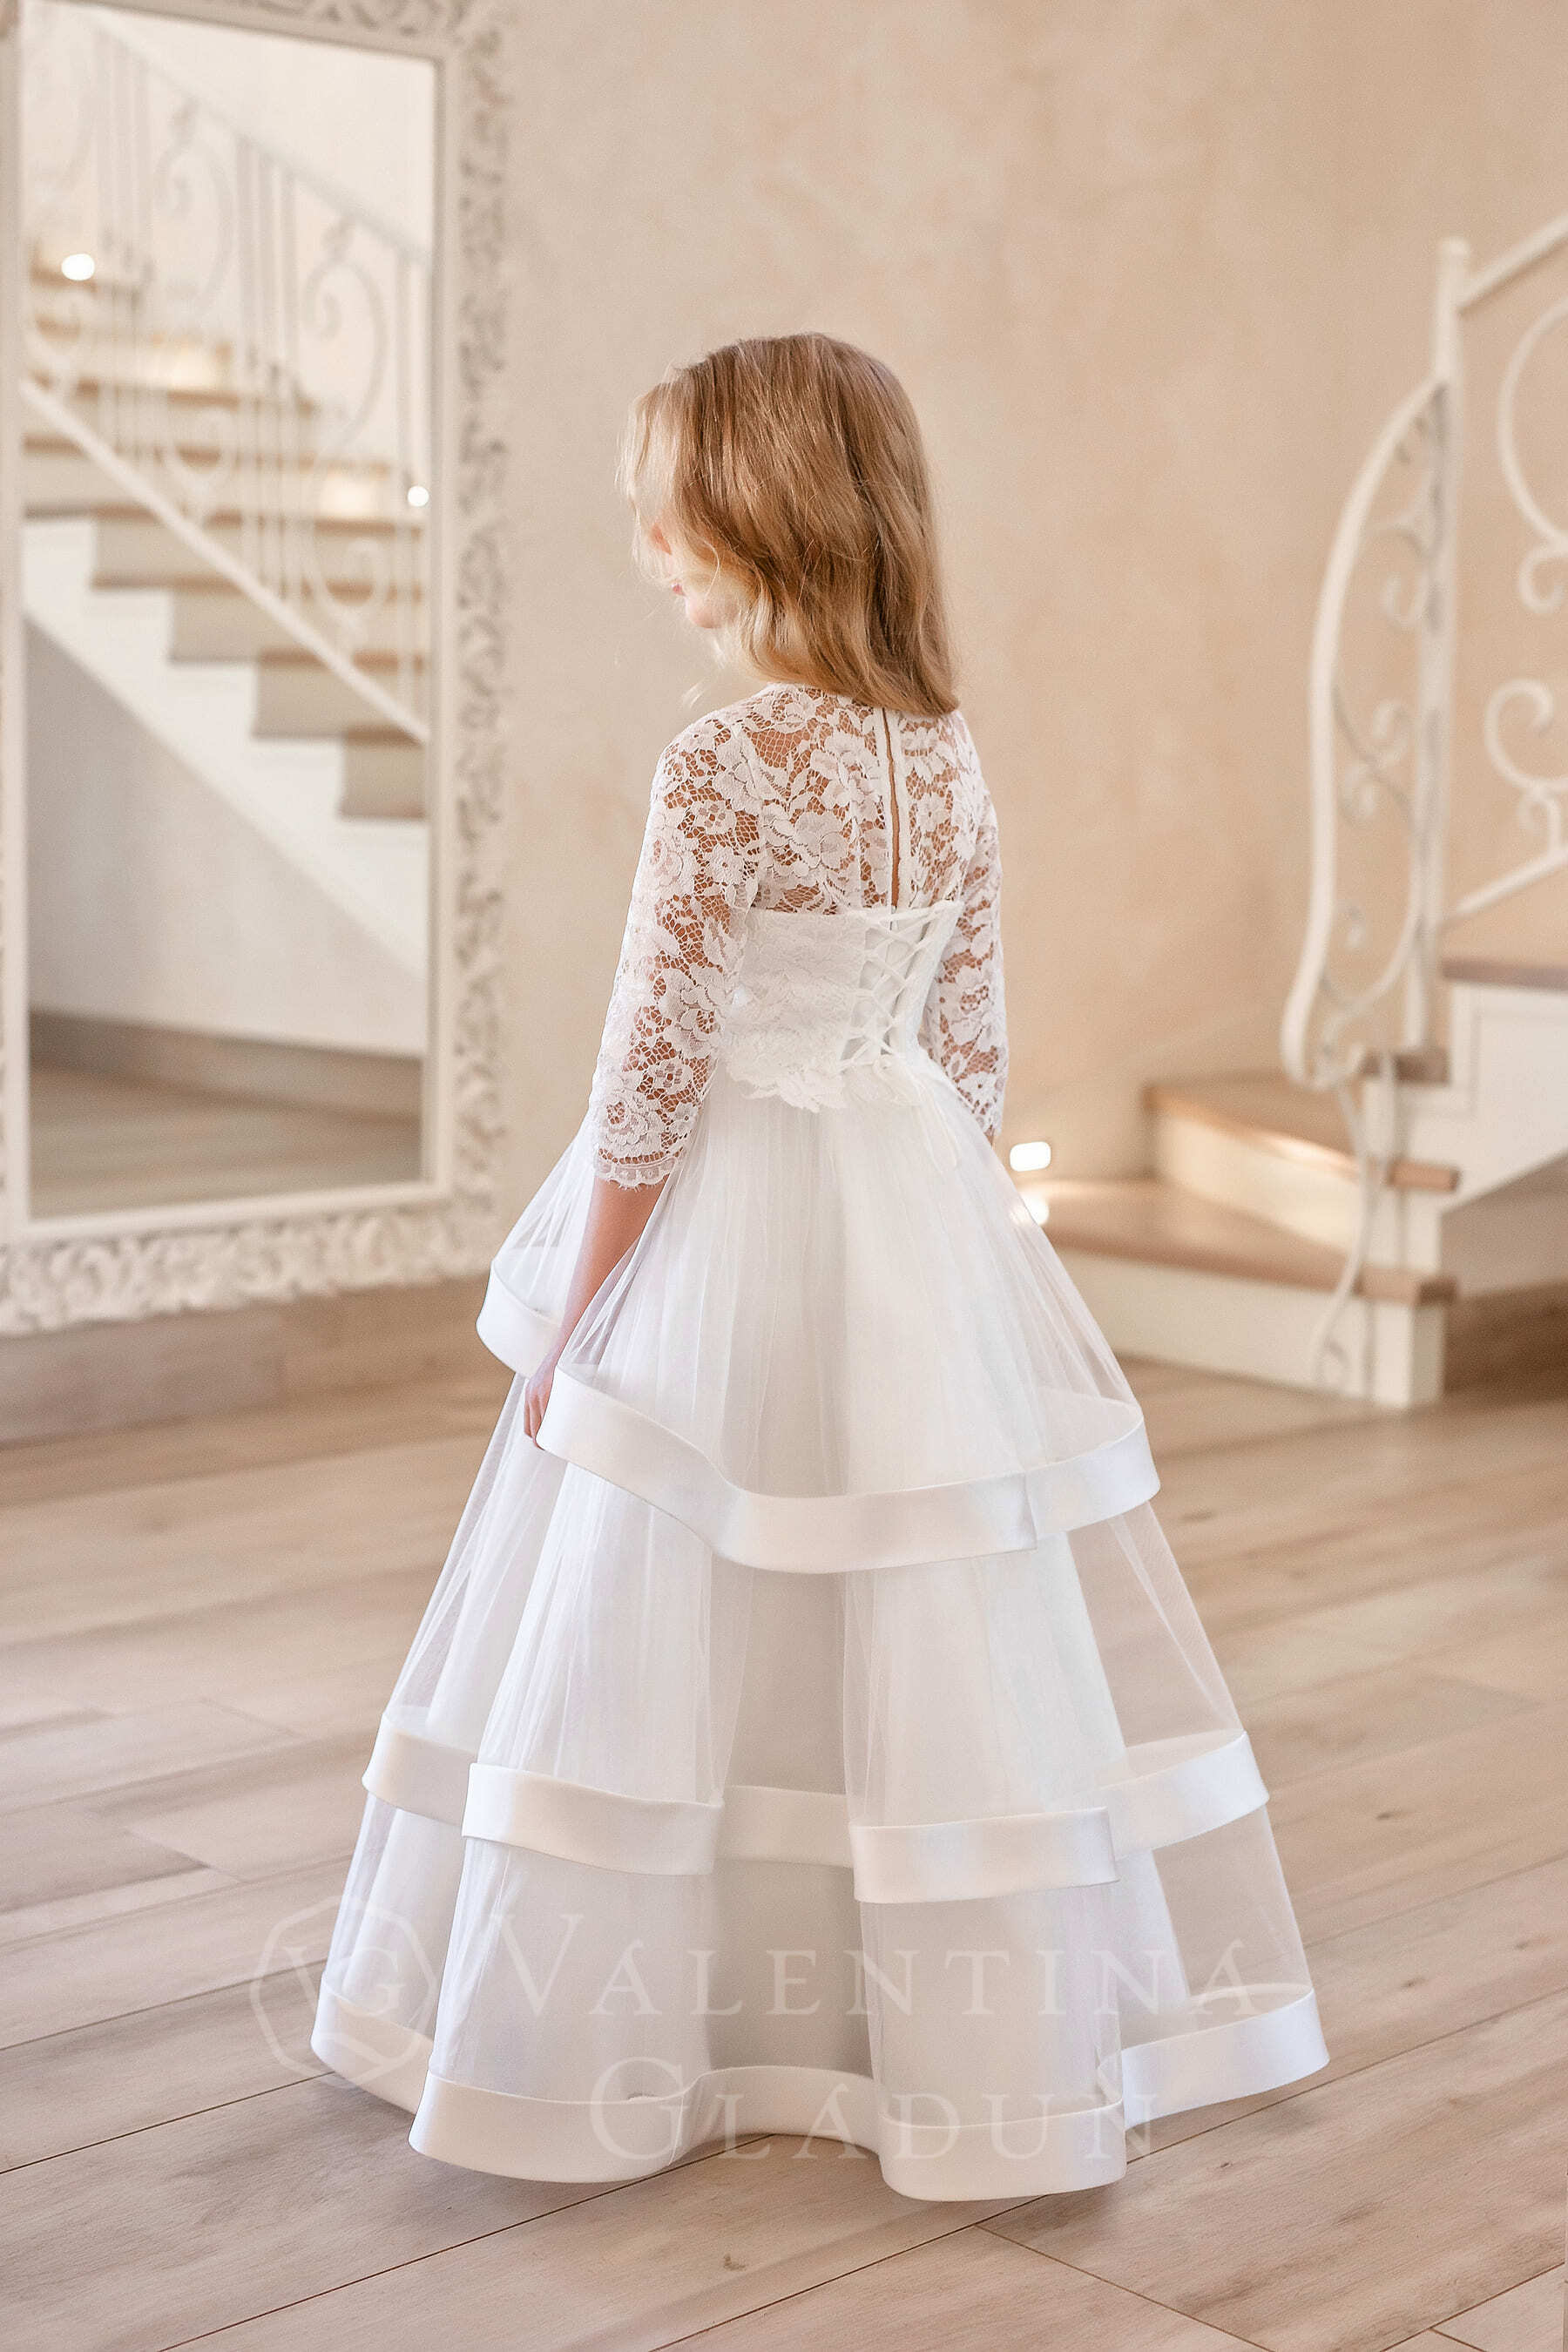 Есения от Валентины Гладун белое пышное платье на девочку